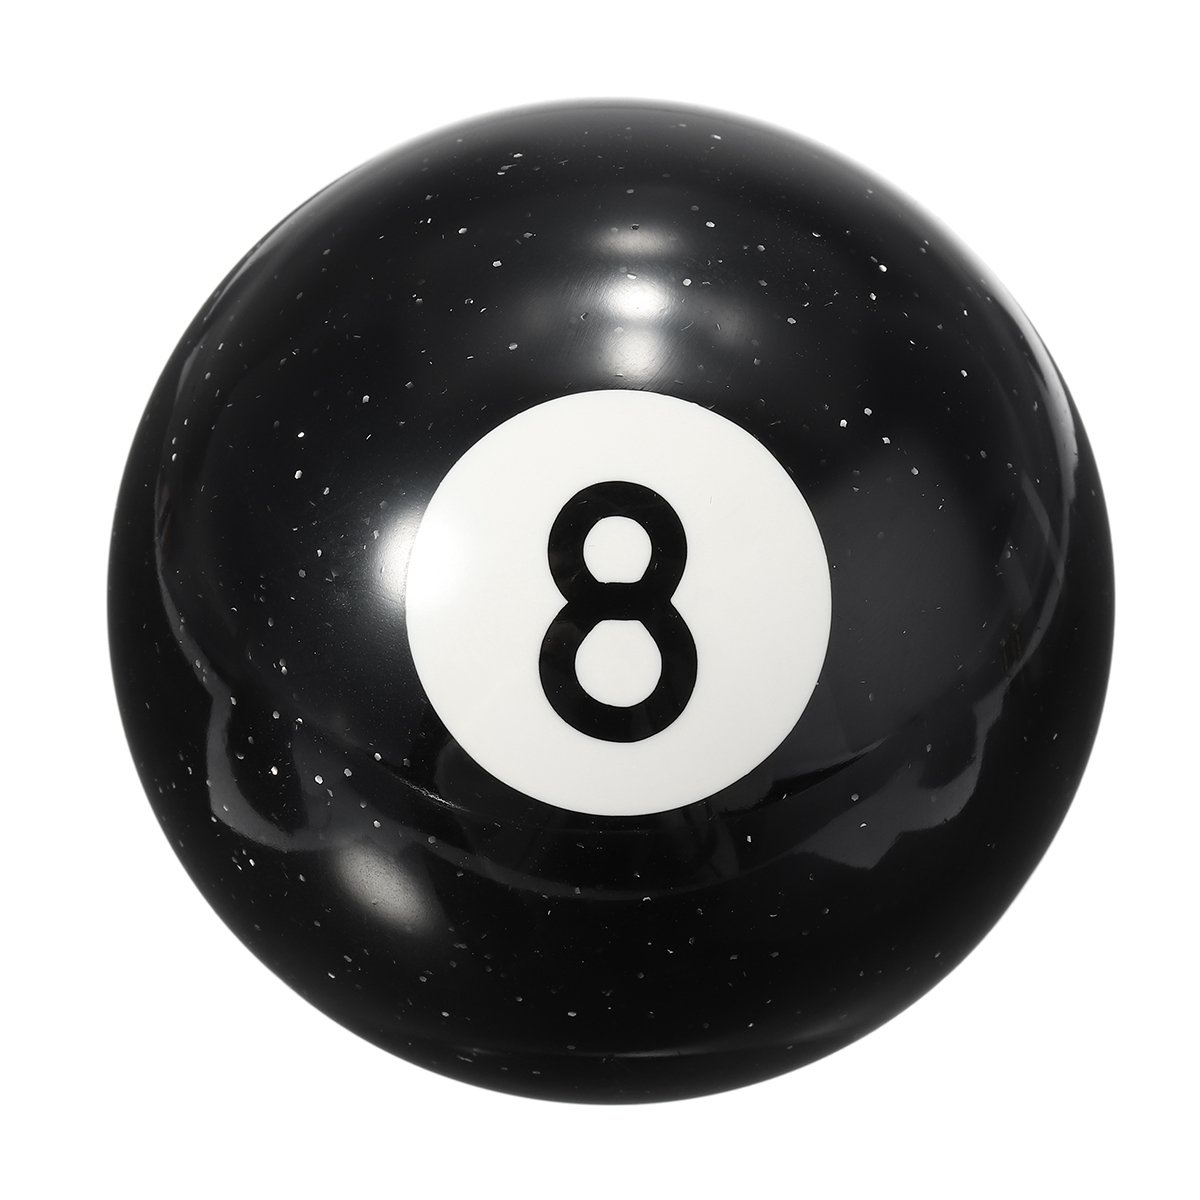 Бильярдный шар 4. Шар для бильярда 8 Stussy. Шар восьмерка бильярд. Черный бильярдный шар. Черный шар в бильярде.